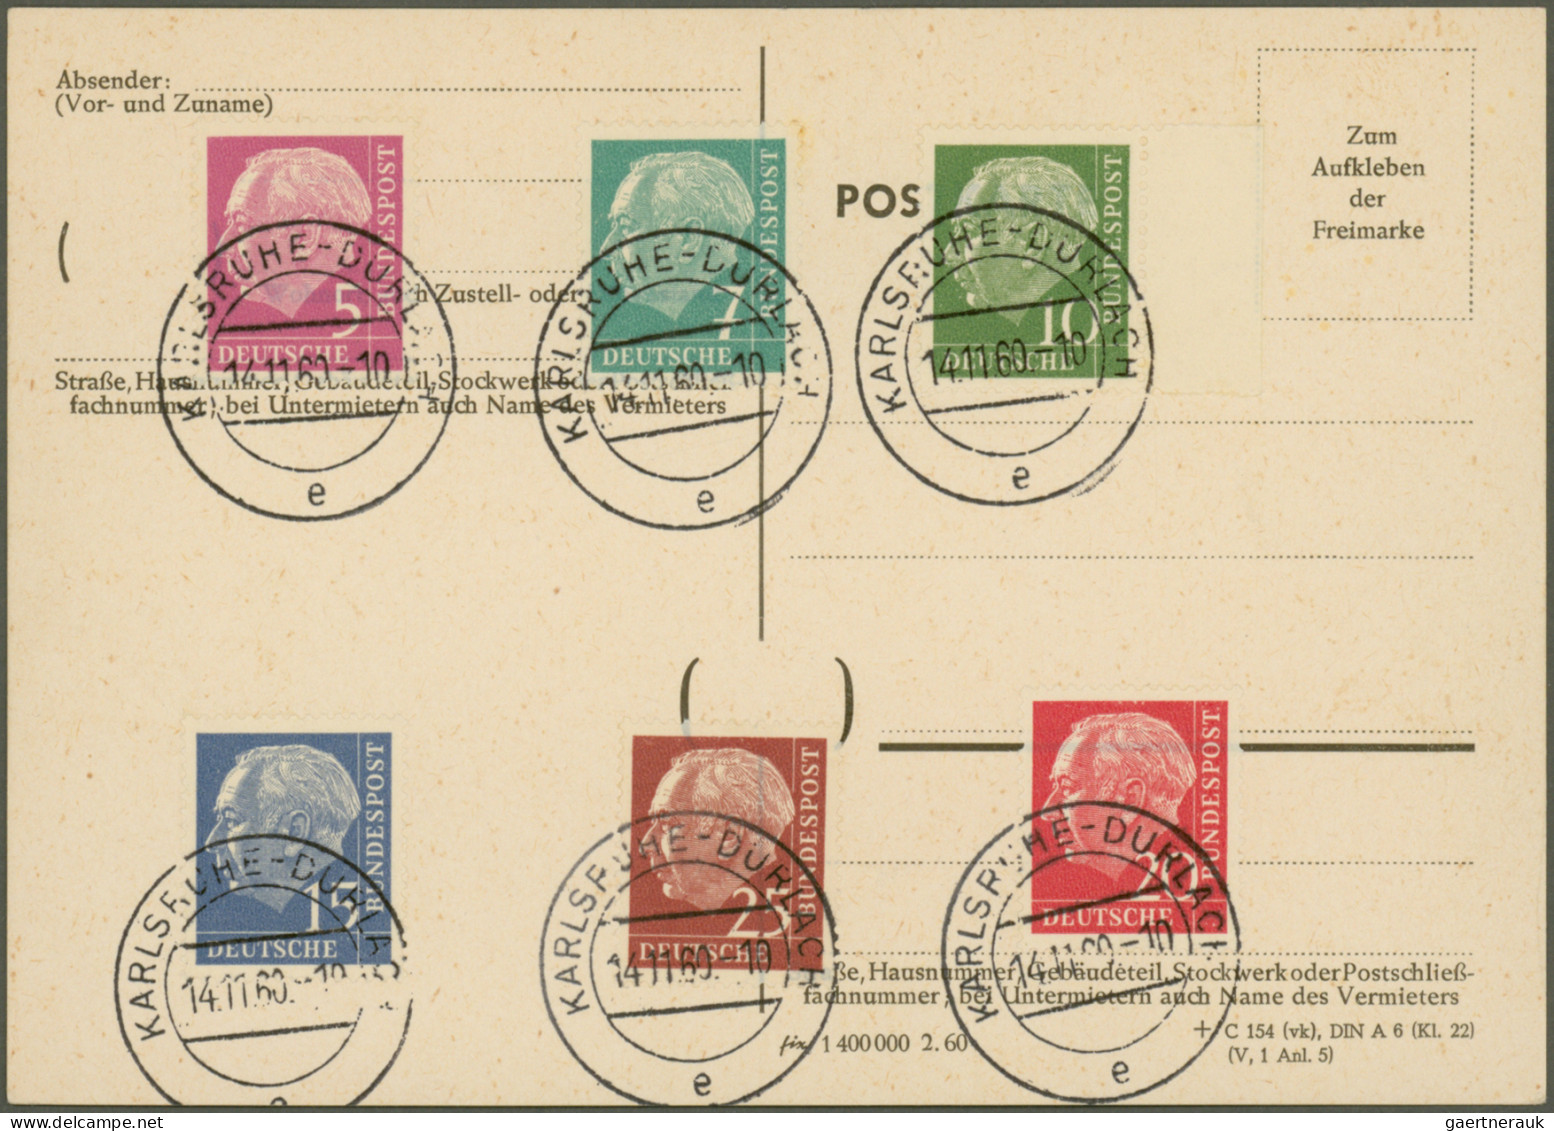 Bundesrepublik Deutschland: 1951/1967, vielseitige Partie von ca. 78 Briefen und